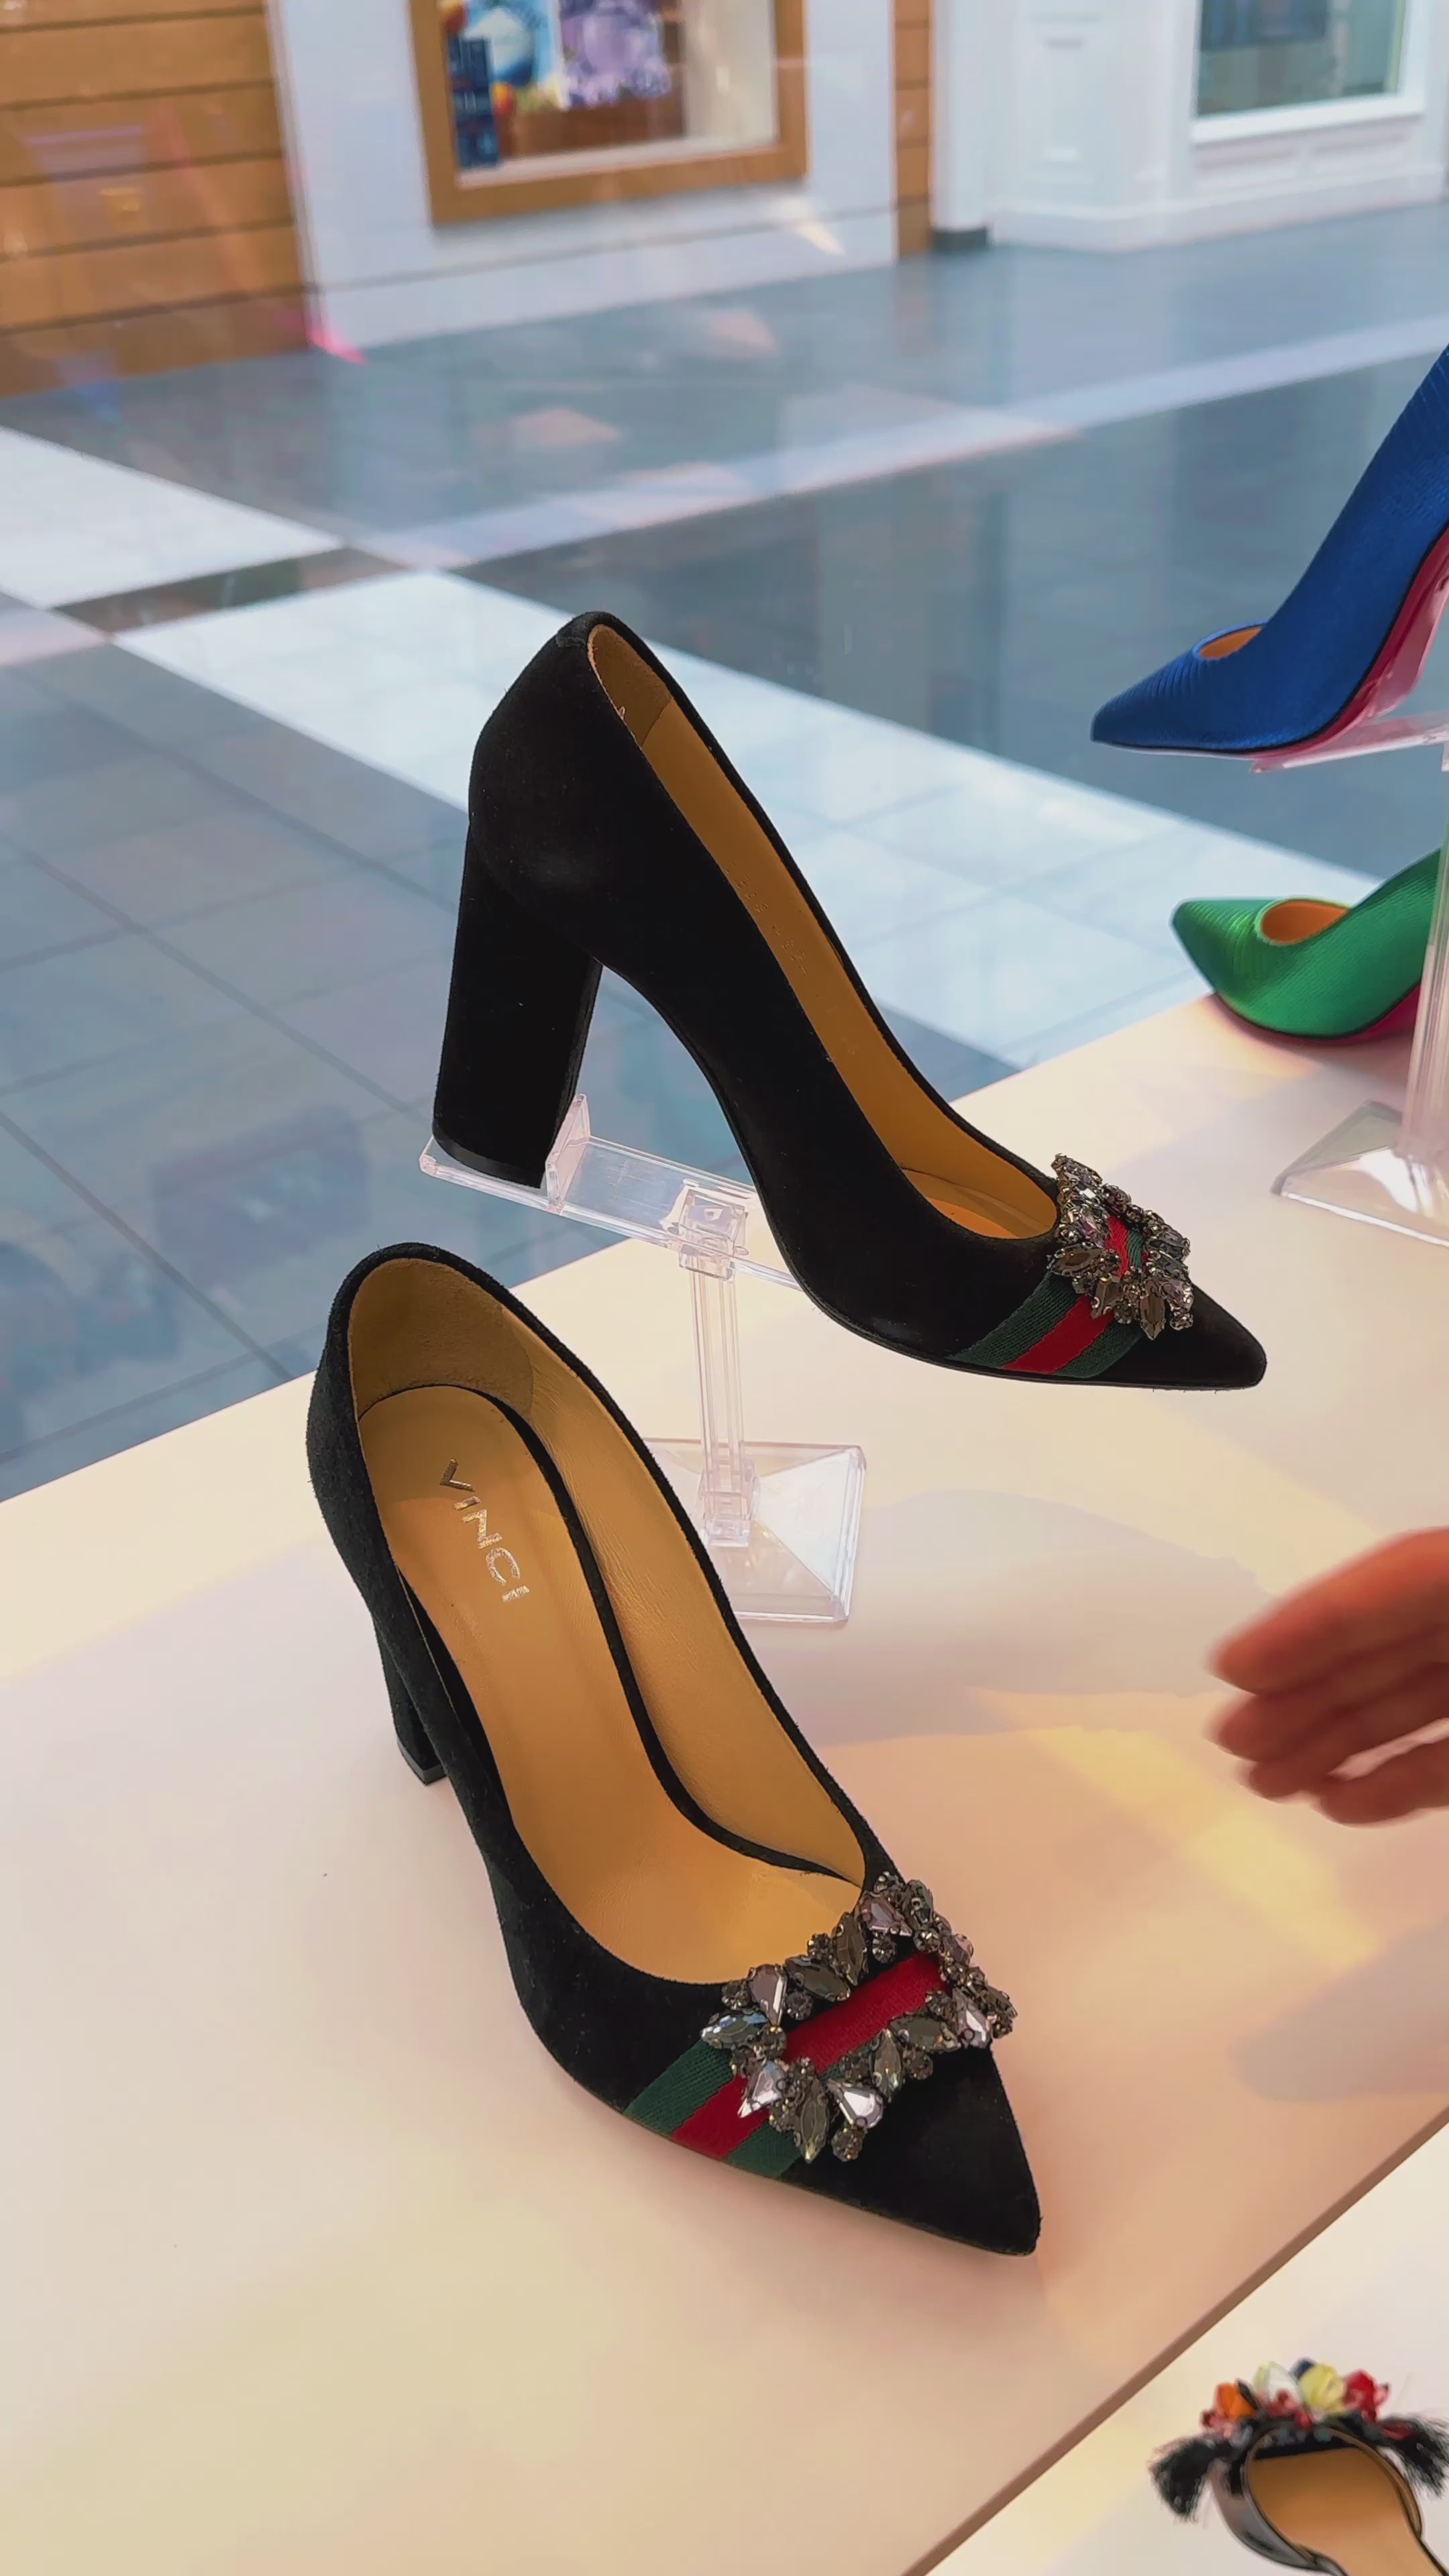 Candies Women's High Heel Pumps Shoes Size 8.5 Faux S… - Gem